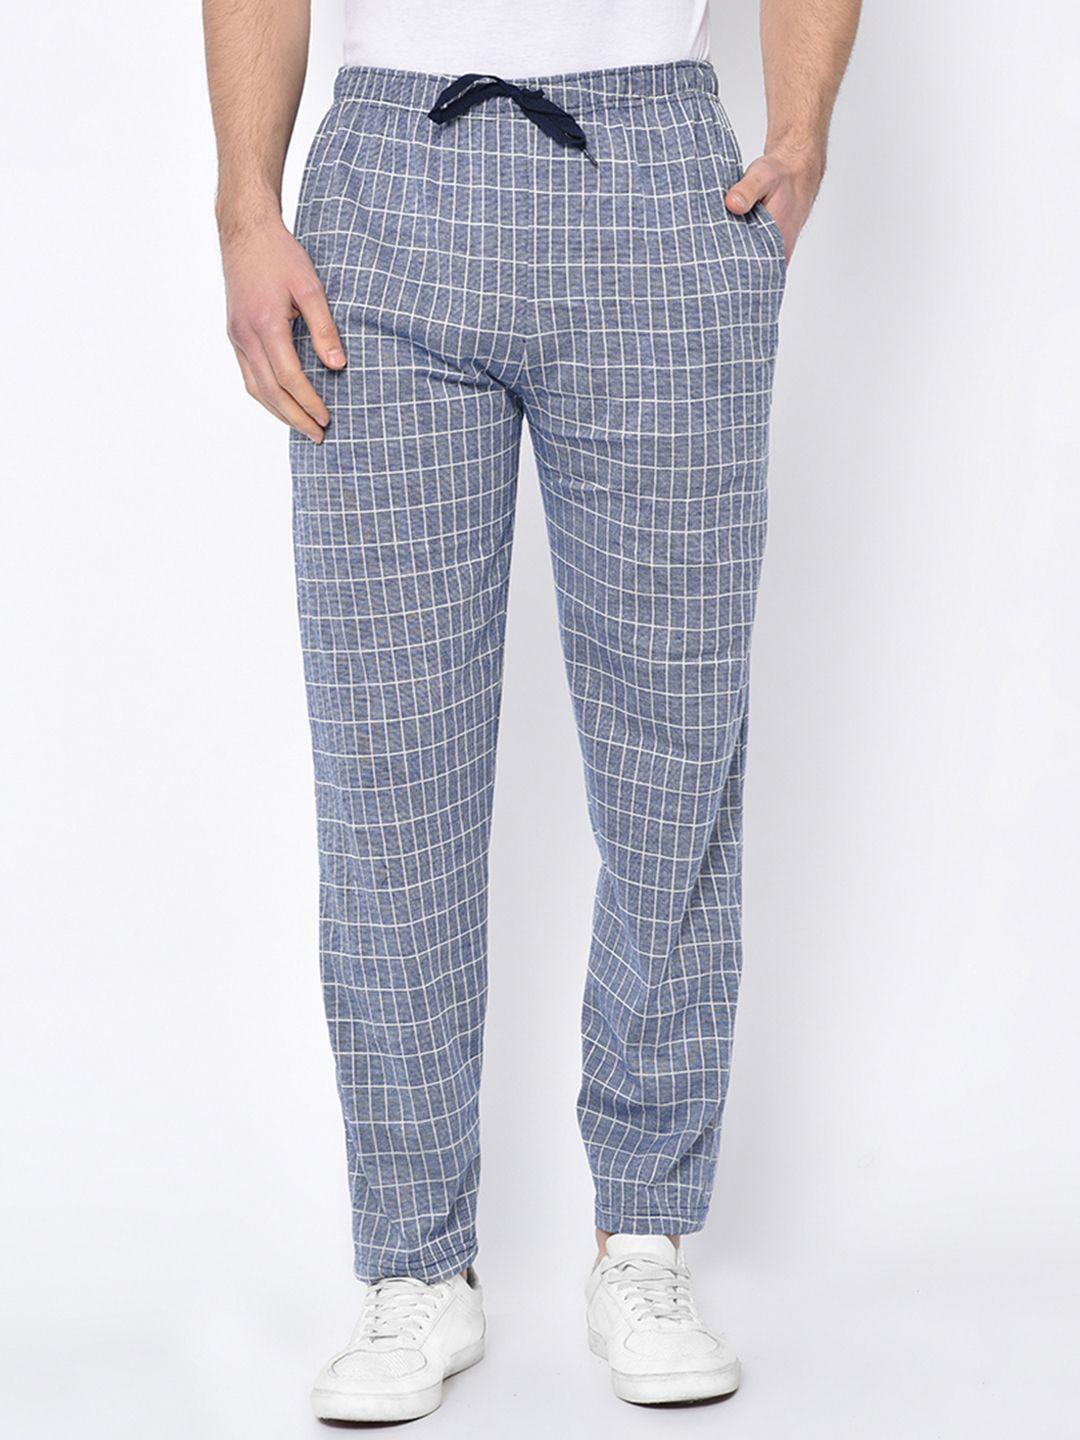 vimal-jonney-men-blue-&-white-checked-track-pants